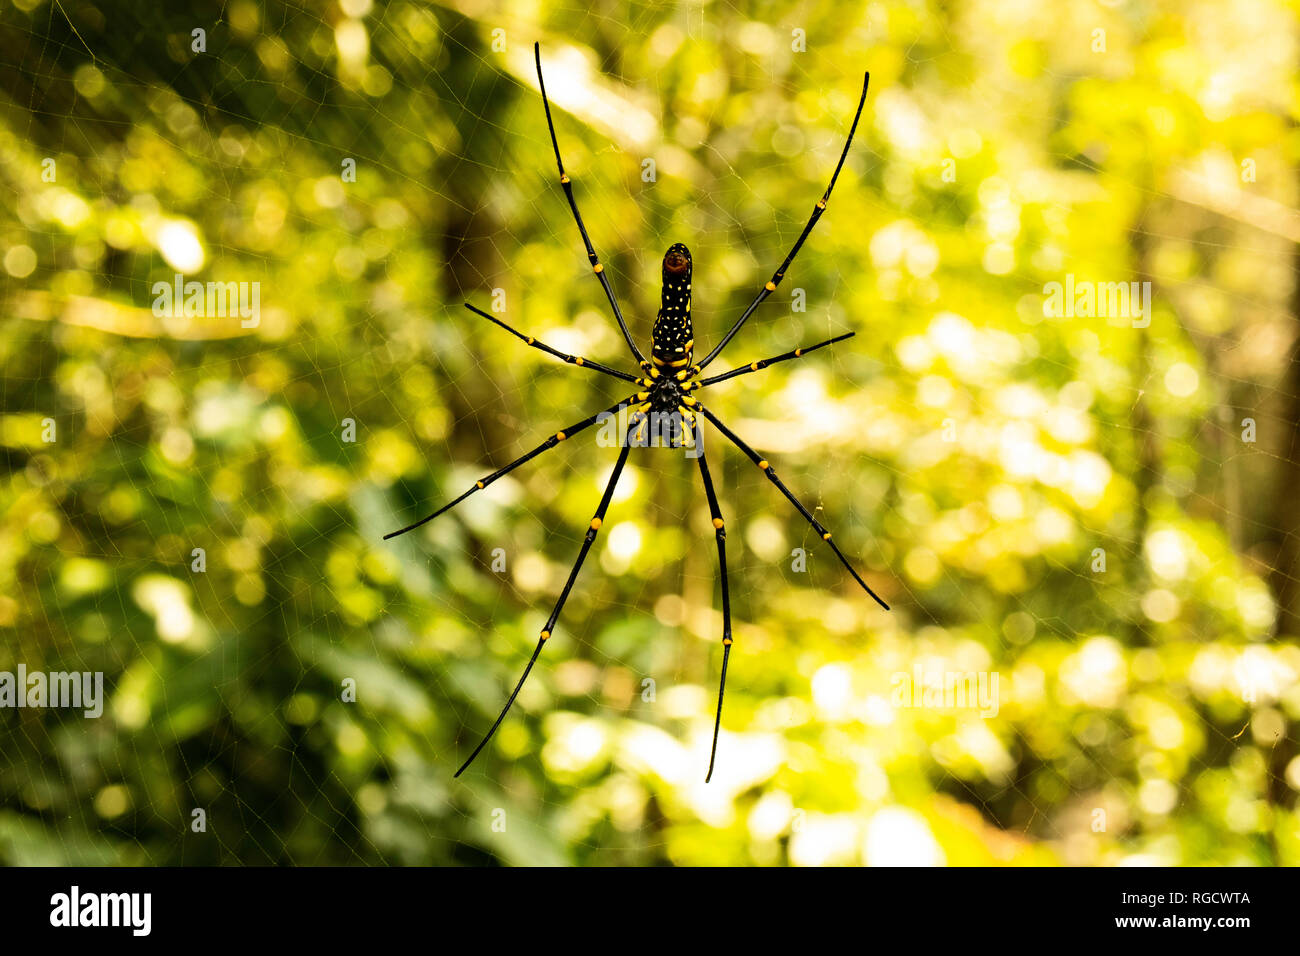 Une image macro capture la sérénité matinale tandis qu'une énorme araignée noire et jaune repose en toute confiance sur sa toile scintillante, prête à attraper une araignée sans méfiance Banque D'Images